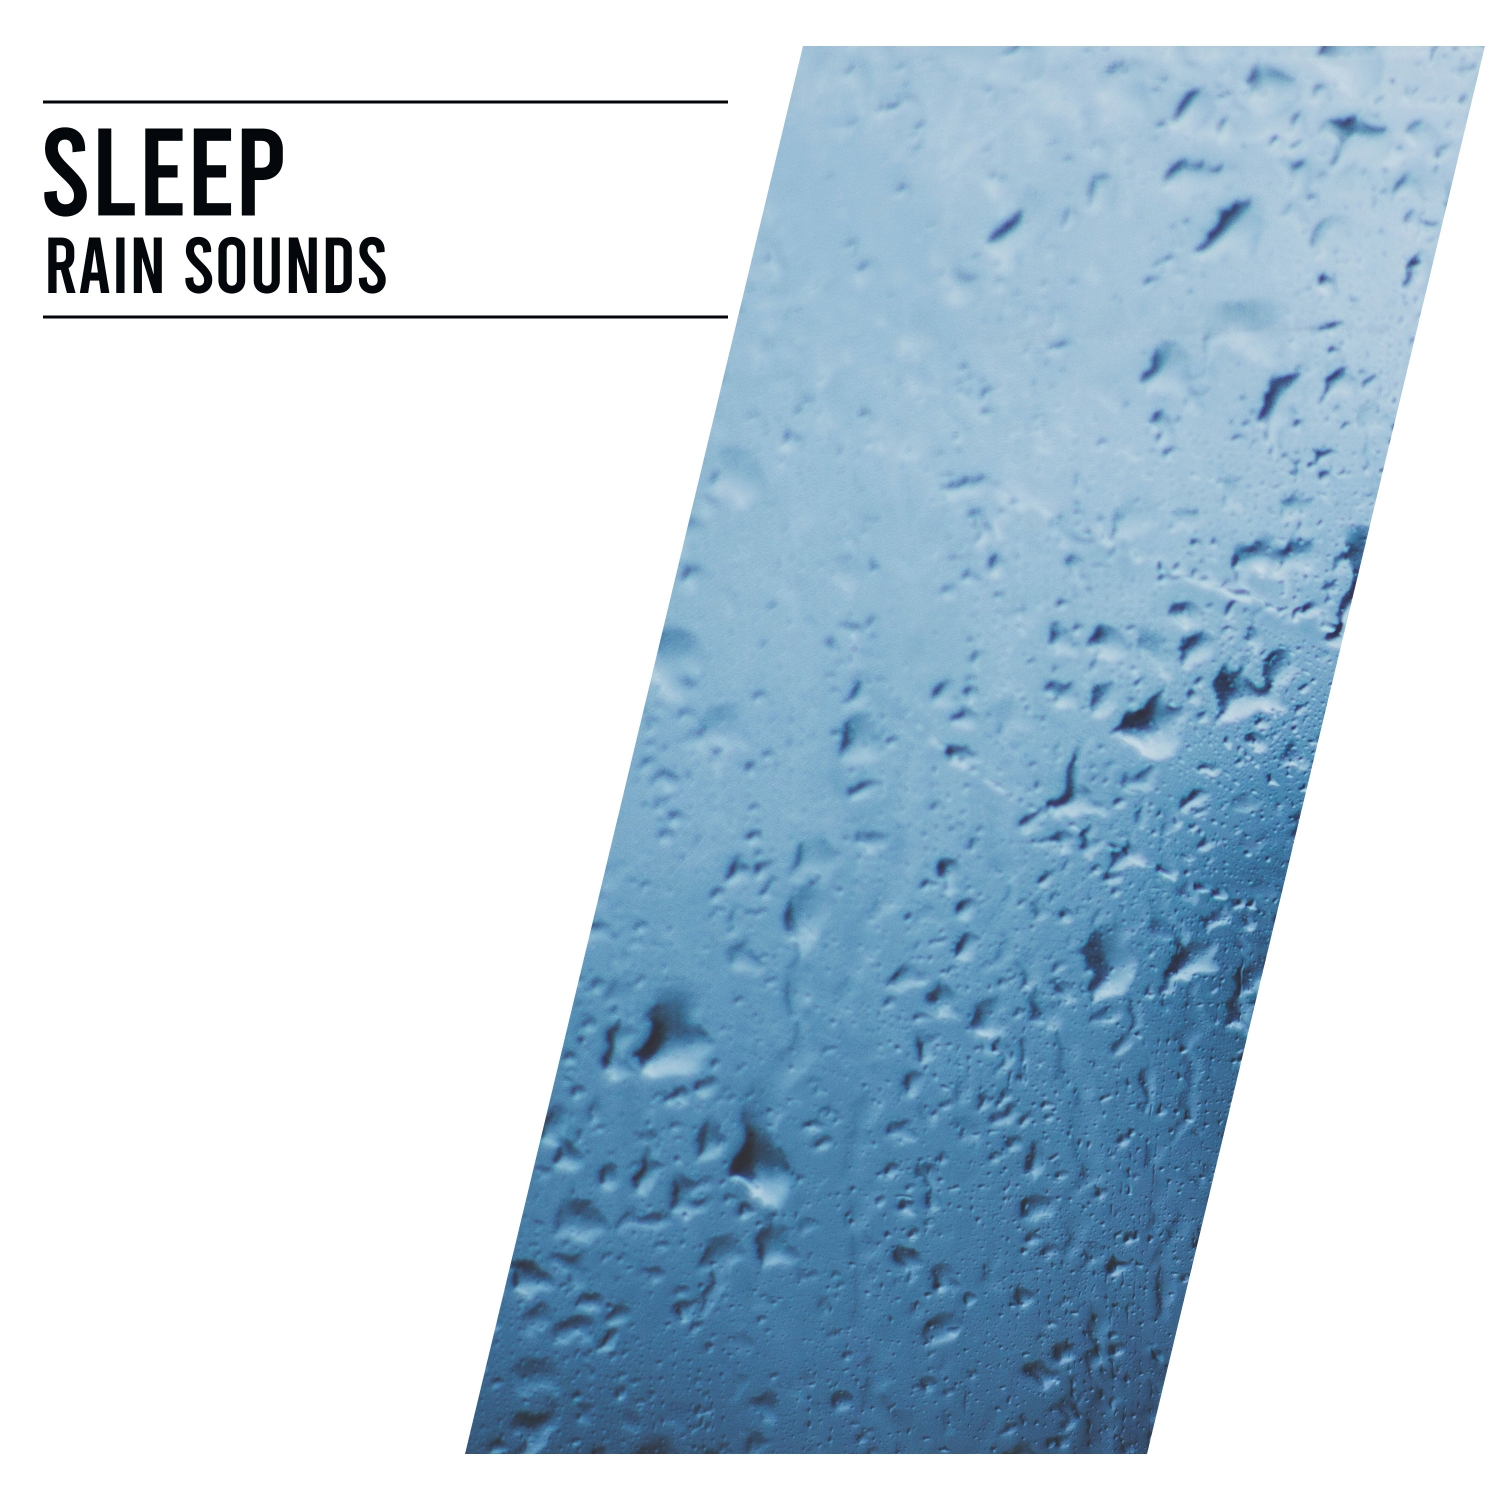 14 Sleep Rain Sounds. Natural Sounds for Sleeping, Meditating, Studying or Yoga